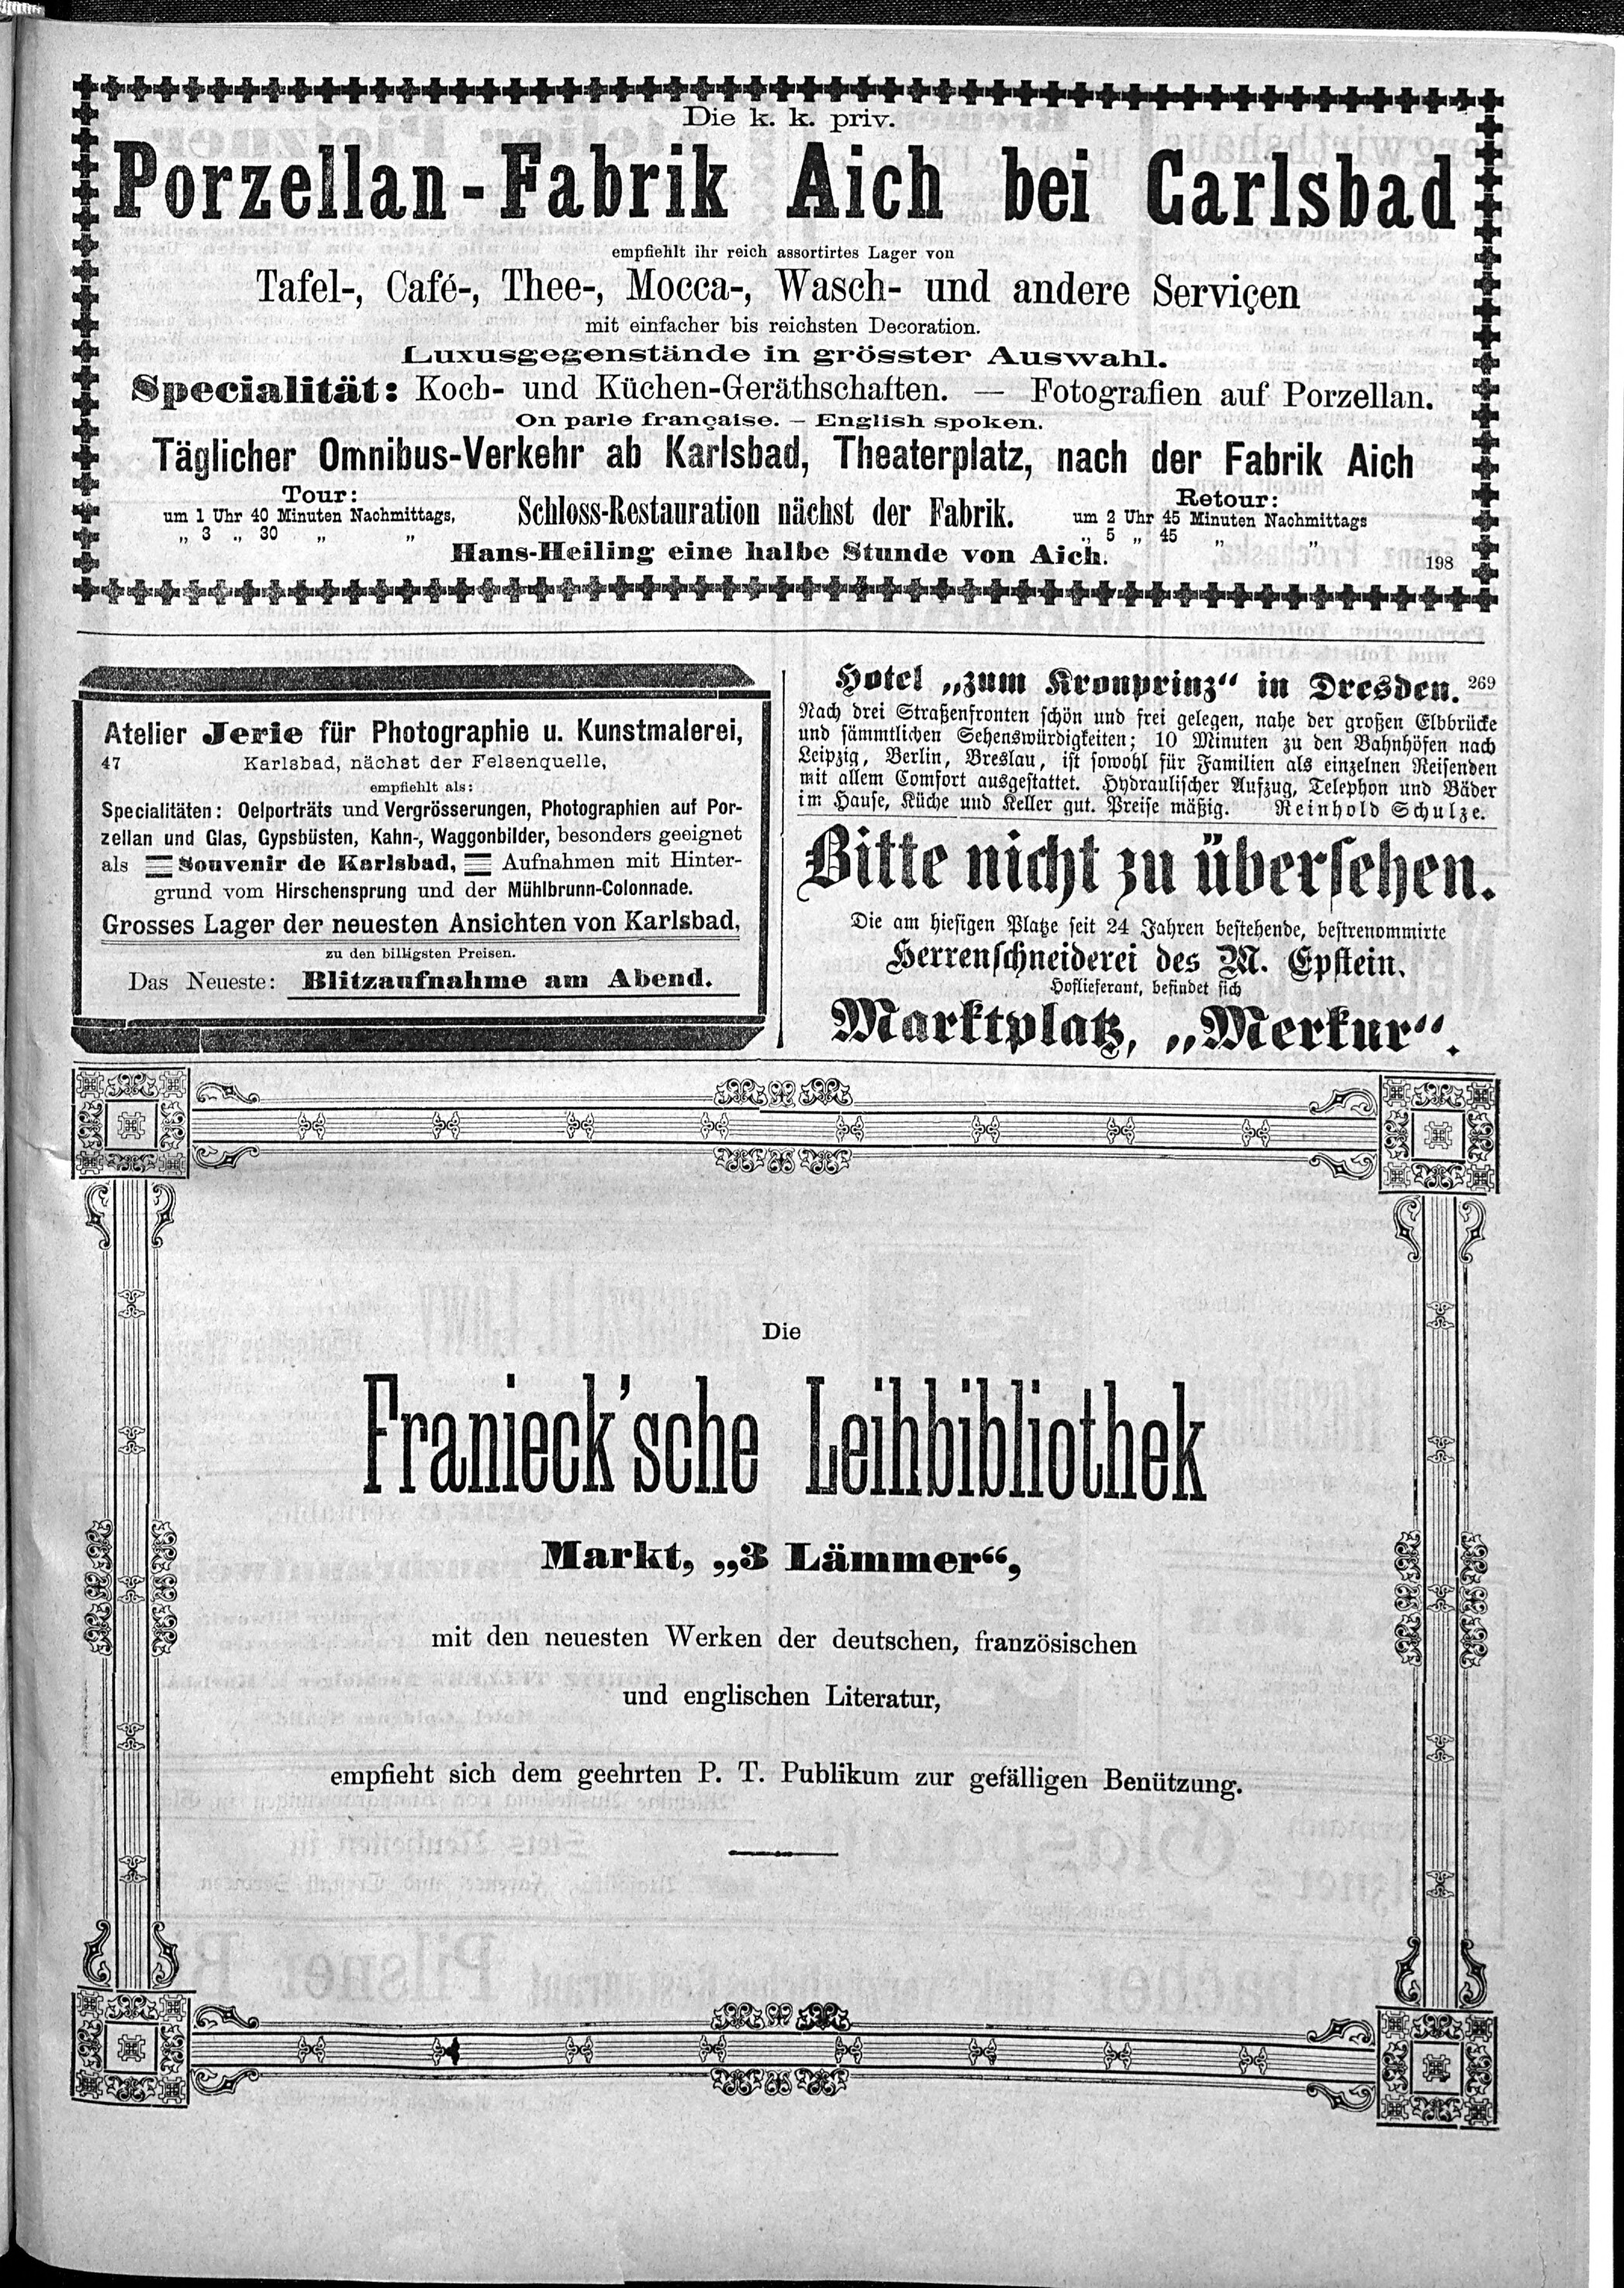 7. karlsbader-badeblatt-1889-09-26-n127_3735